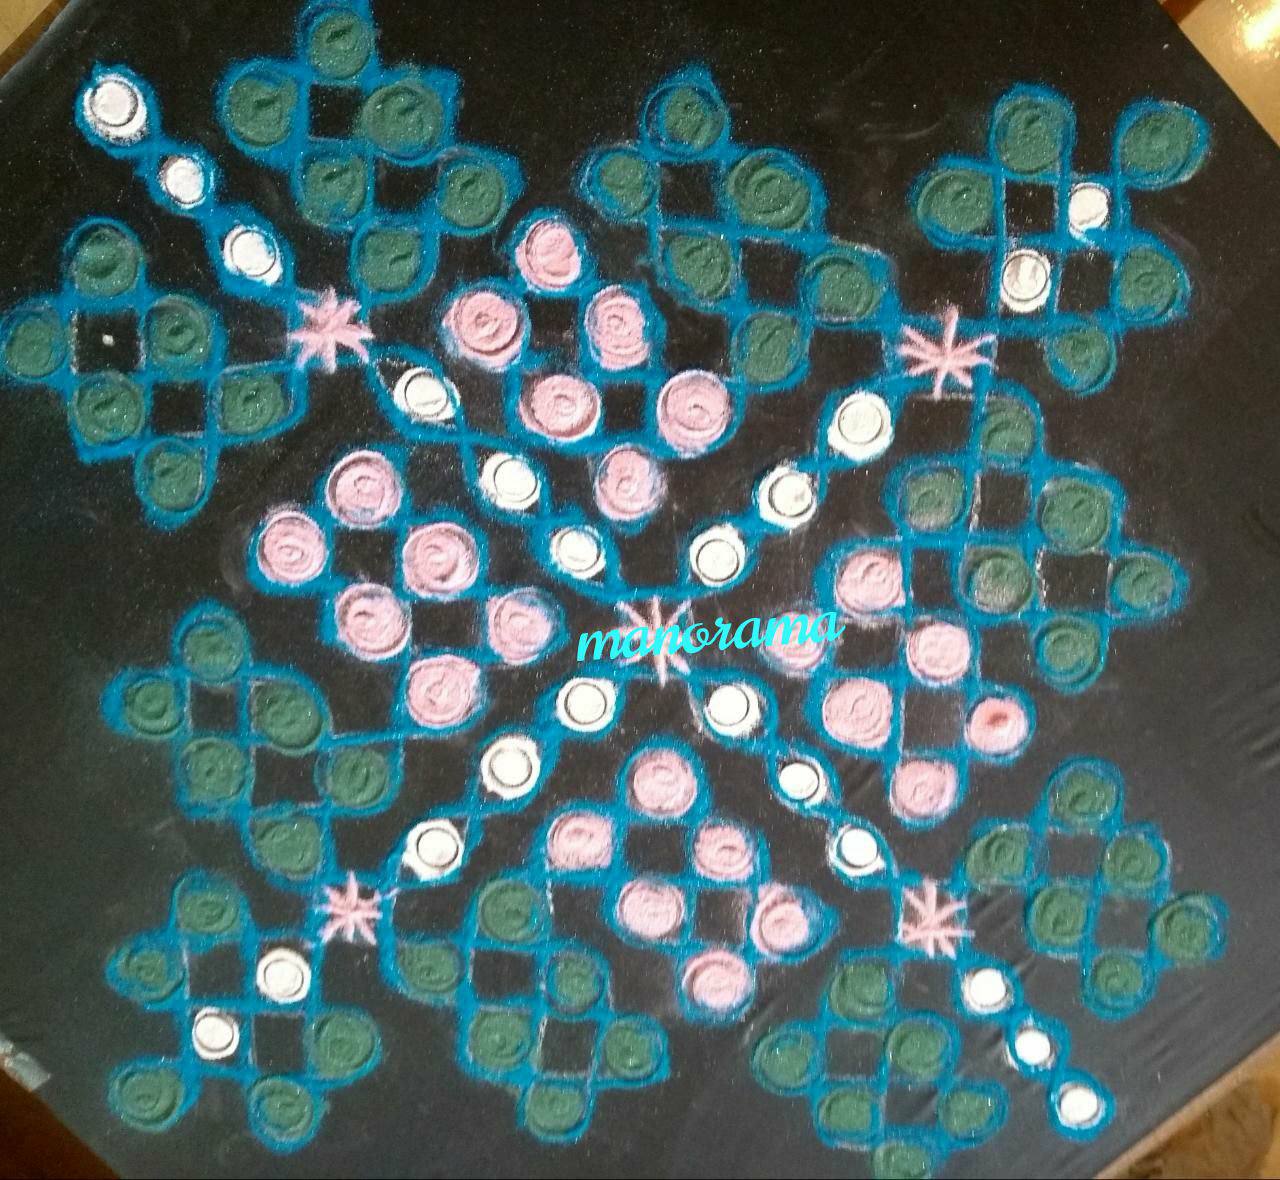 Chikku kolam with 15 dots